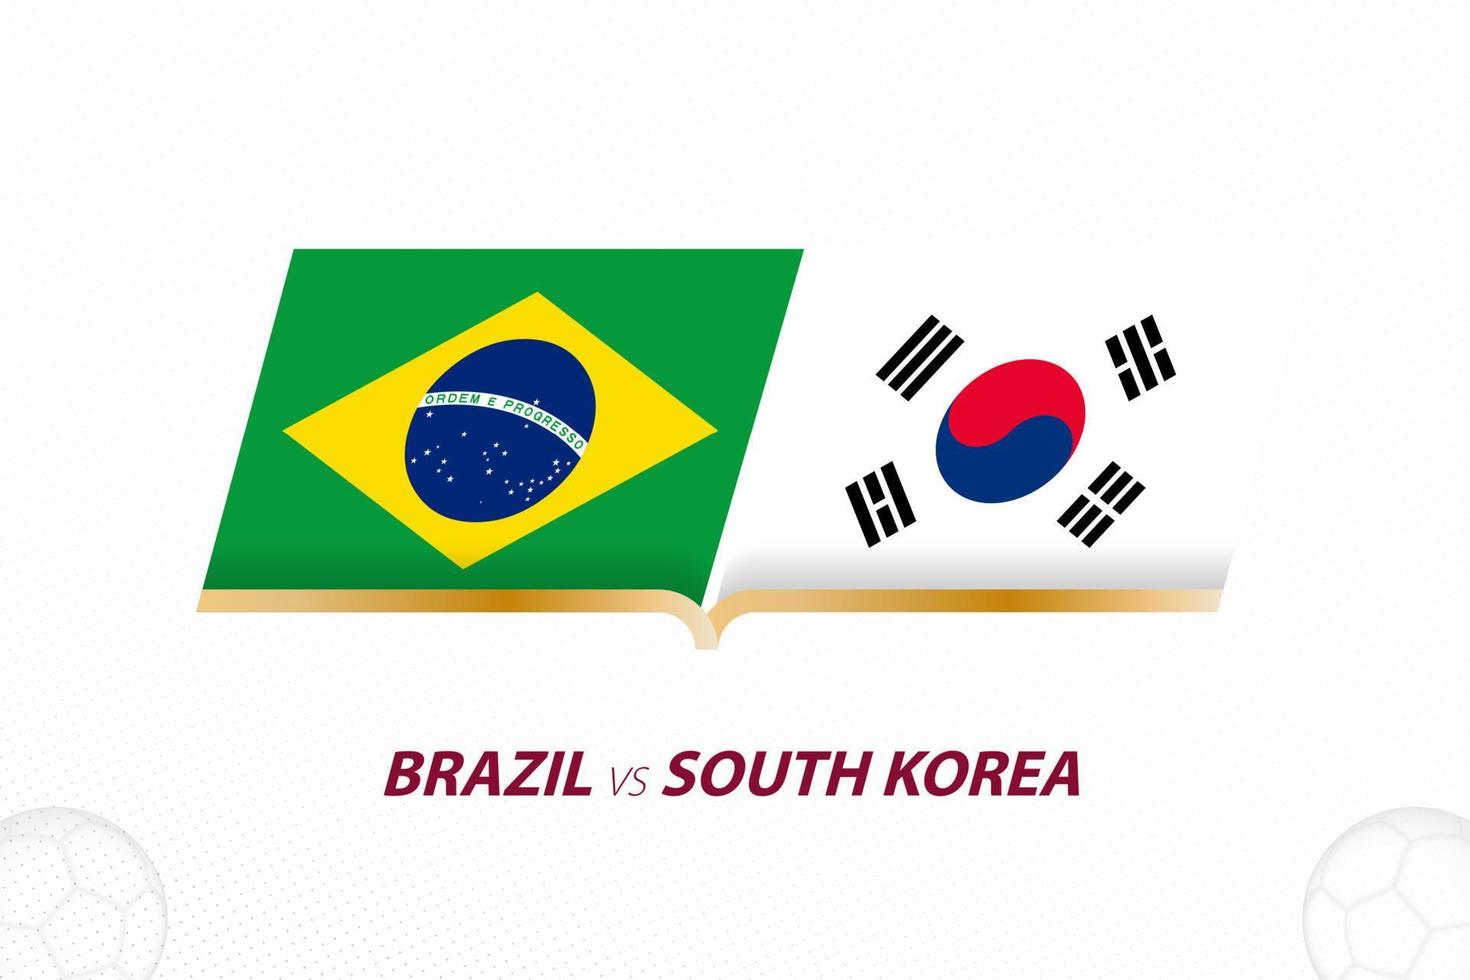 Brasilien mot söder korea i fotboll konkurrens, runda av 16. mot ikon på fotboll bakgrund. vektor